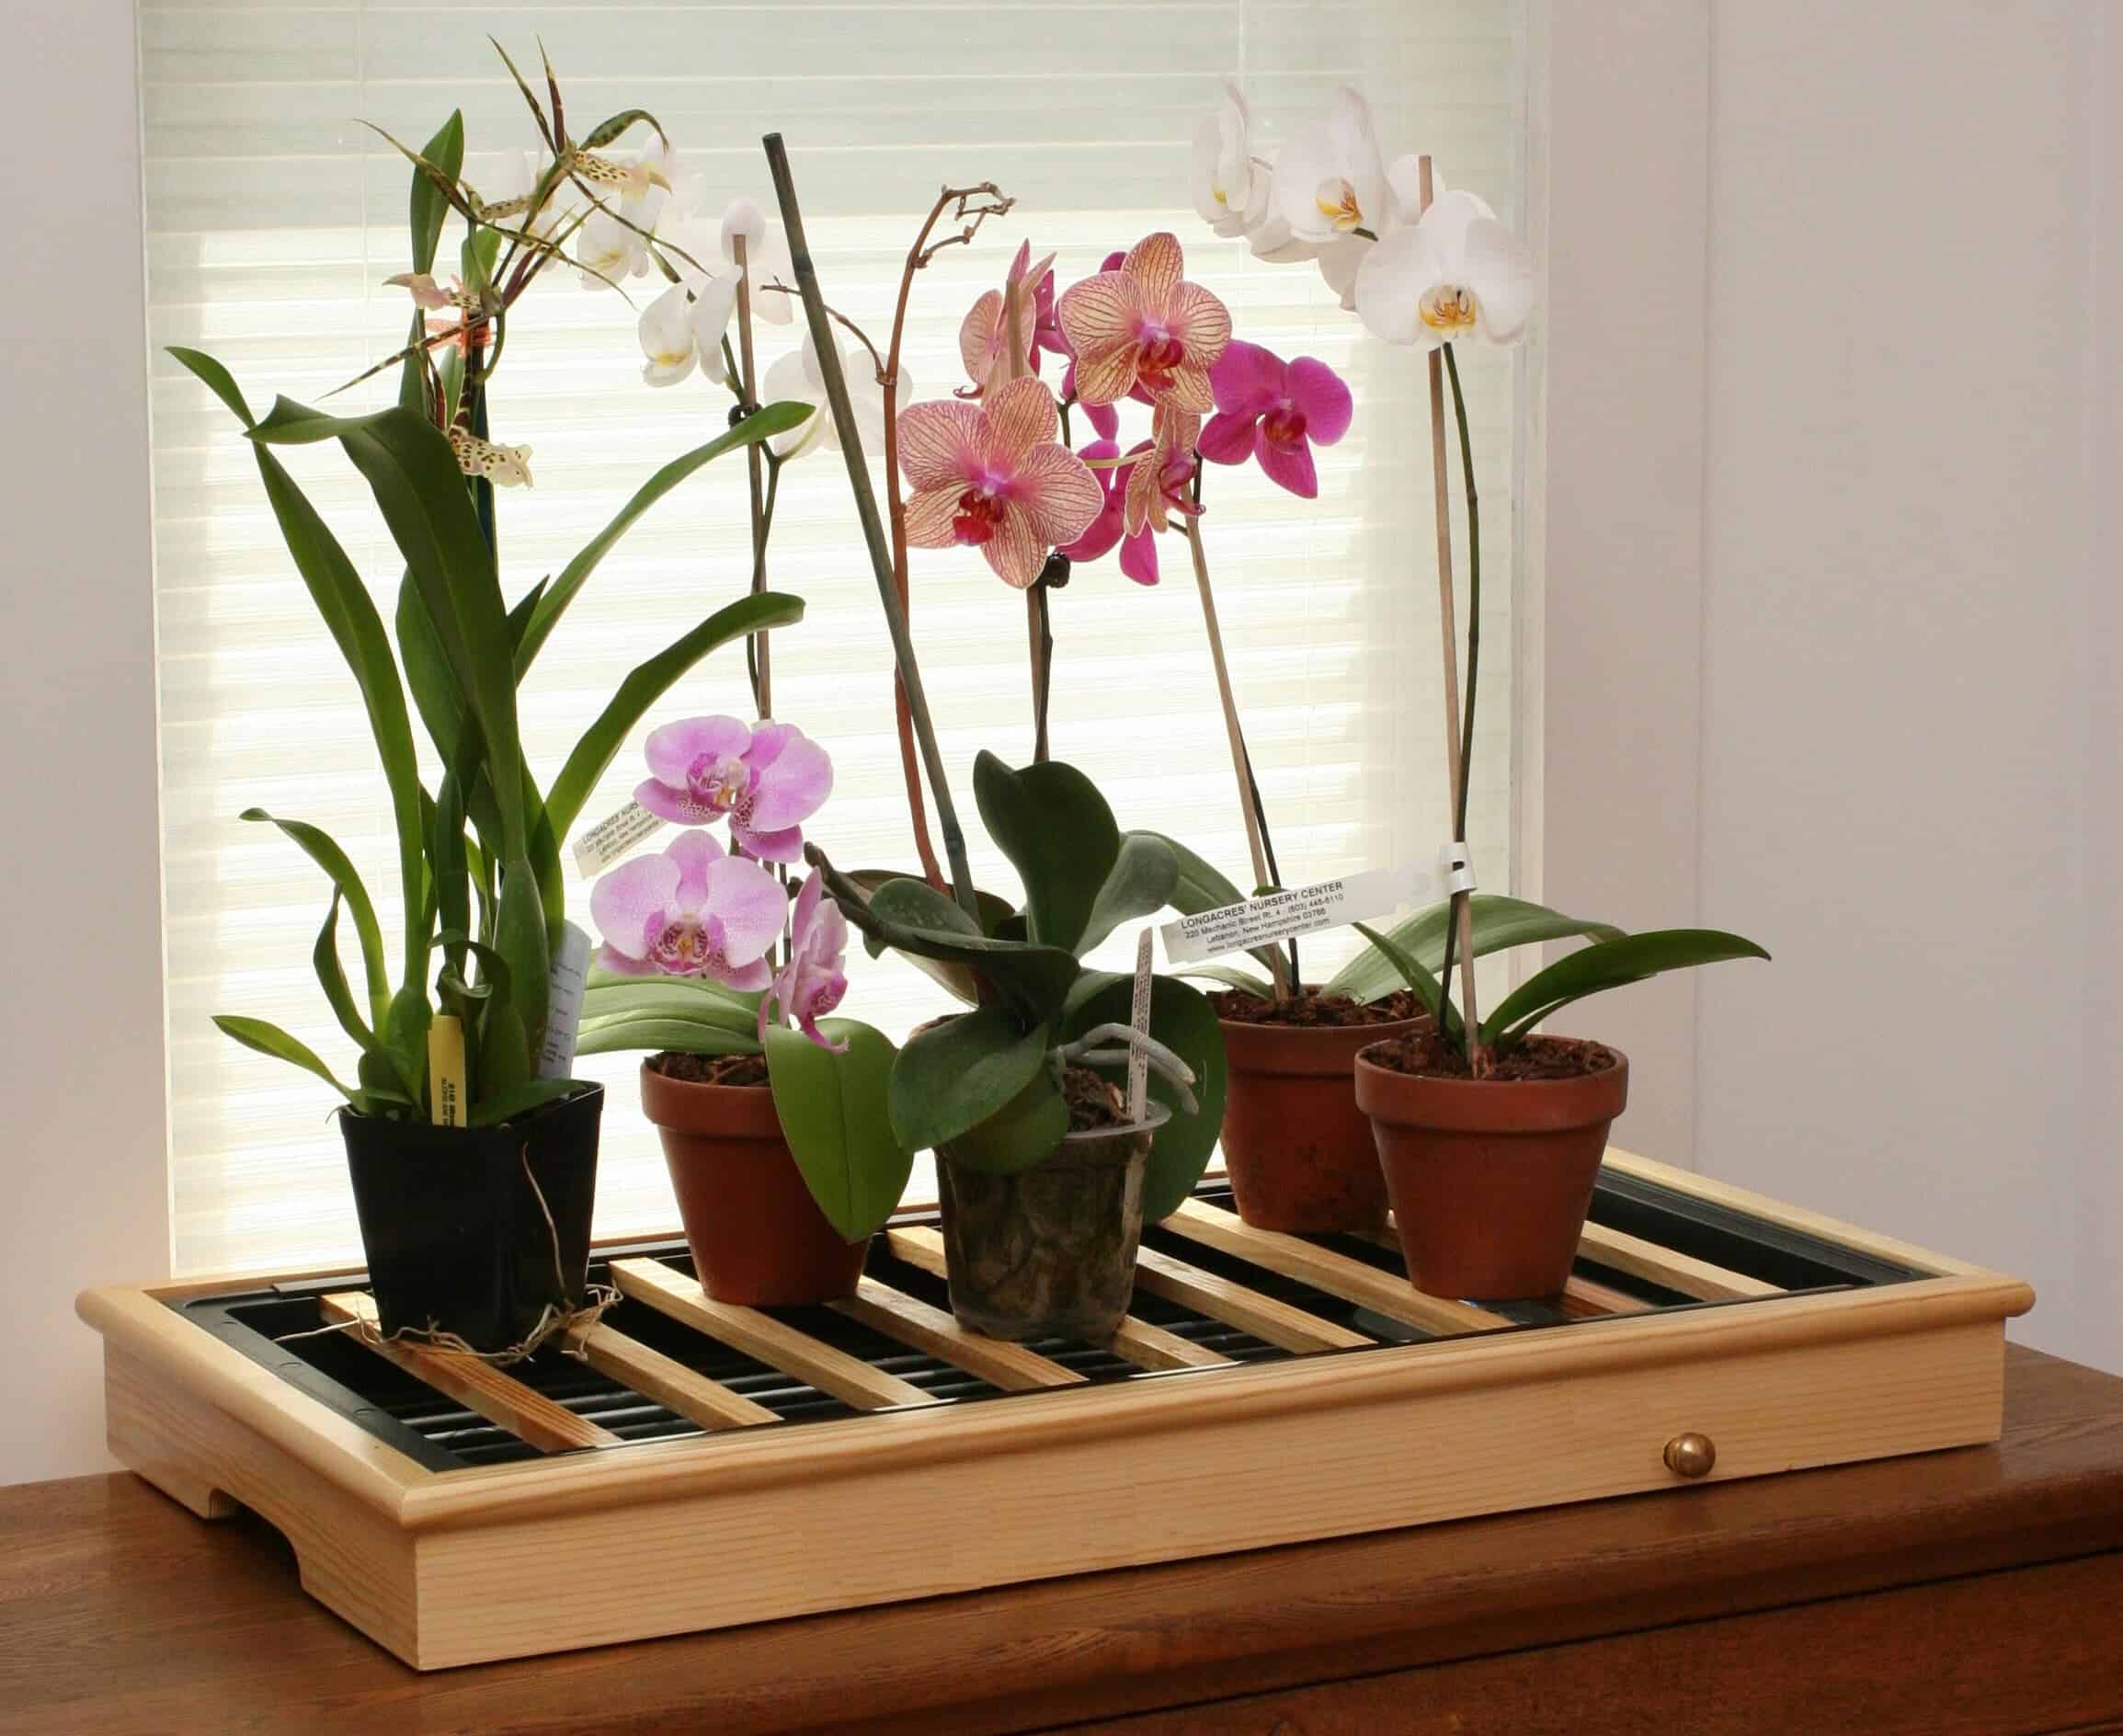 Фаленопсис: как правильно ухаживать за орхидеей после и во время цветения в домашних условиях, пересадка цветка в горшок после покупки